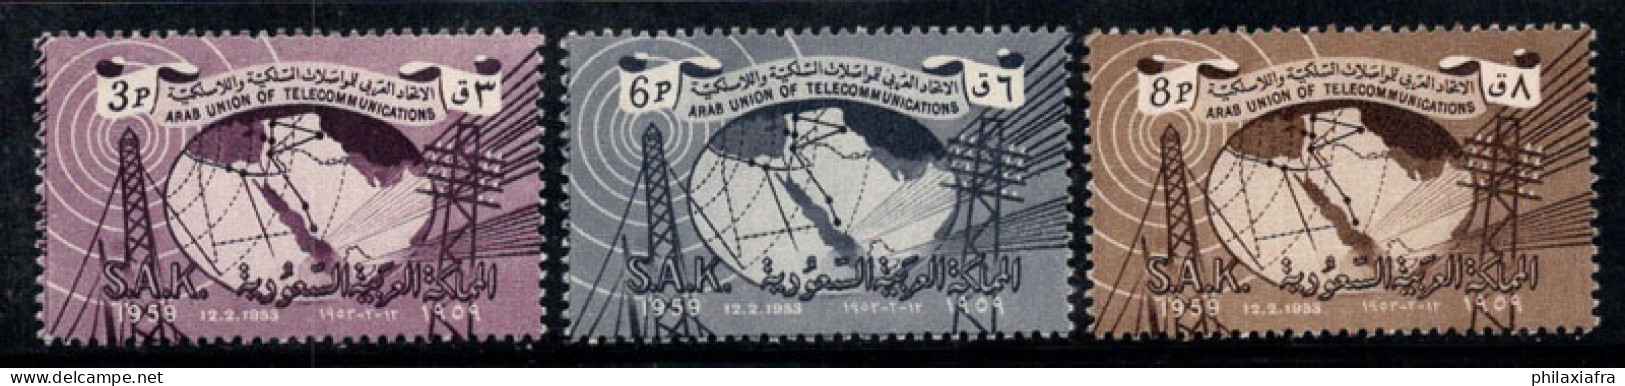 Arabie Saoudite 1961 Mi. 118-20 Neuf ** 100% Poteaux Radio Et Télégraphiques - Saoedi-Arabië